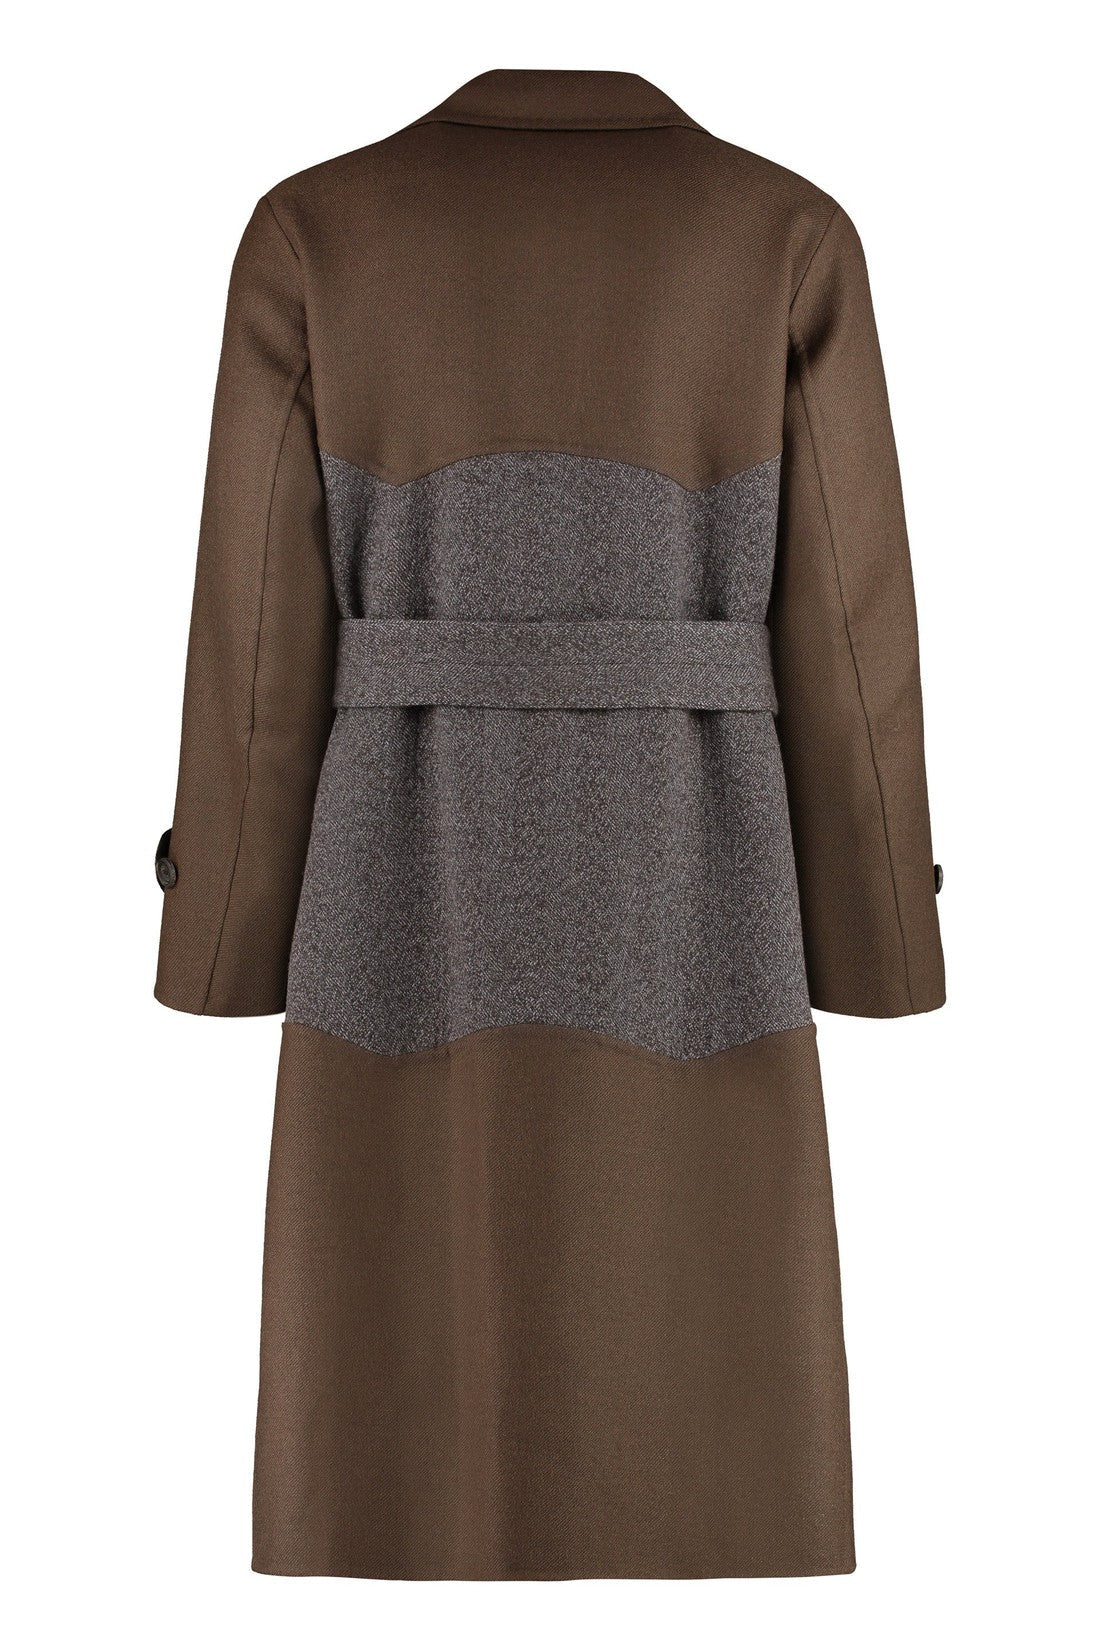 FERRAGAMO-OUTLET-SALE-Wool long coat-ARCHIVIST